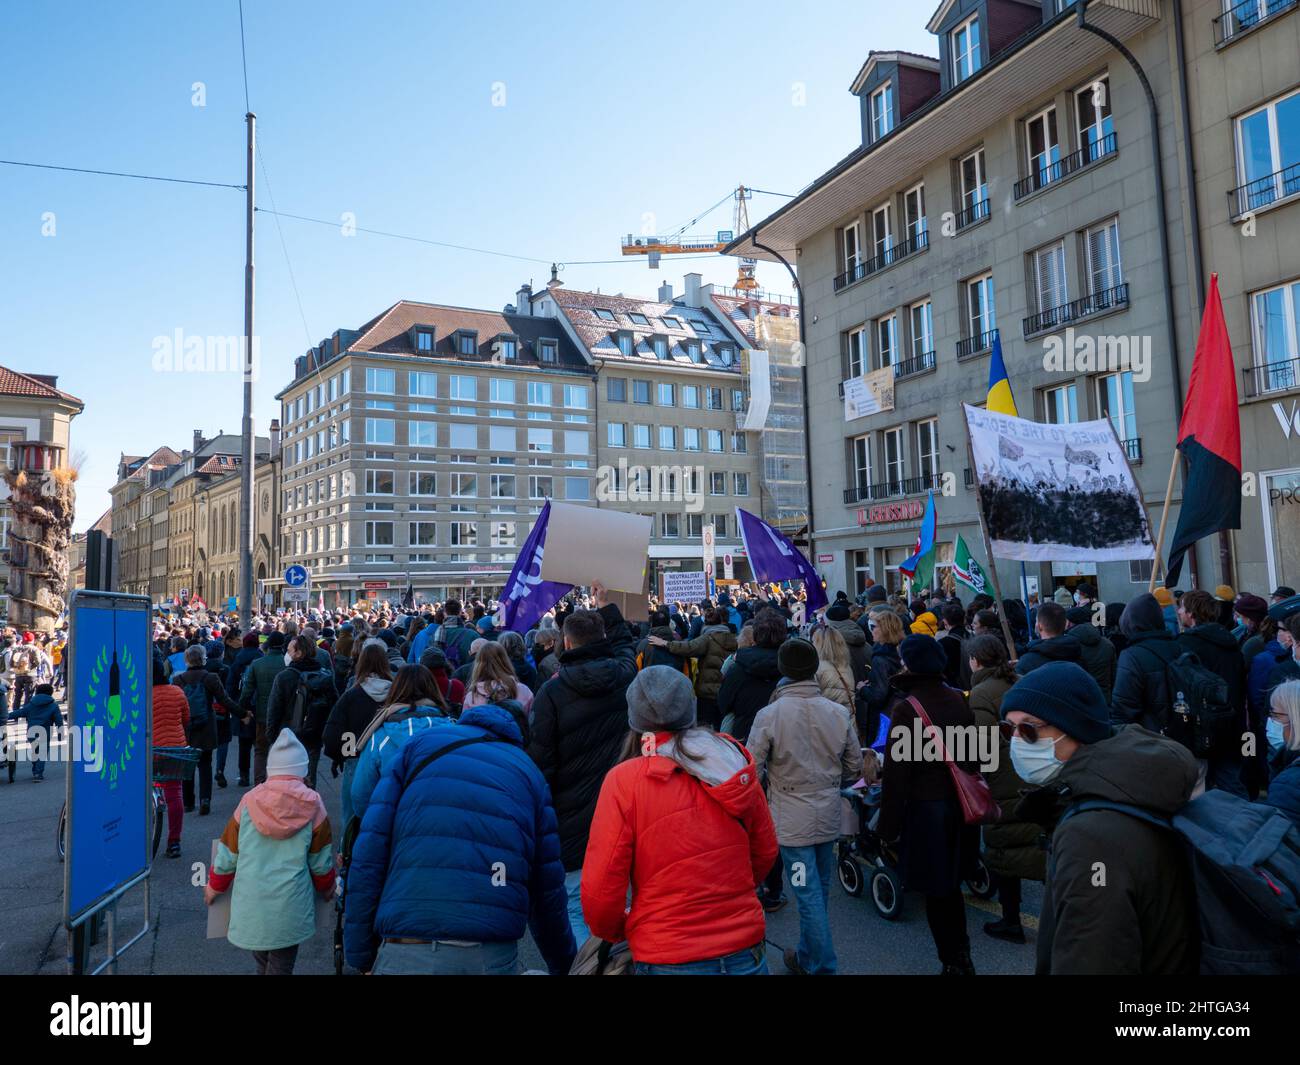 Jusqu’à 20’000 personnes avec des bannières à Berne pour protester contre l’agression russe en Ukraine. Berne, Suisse - 02.26.2022 Banque D'Images